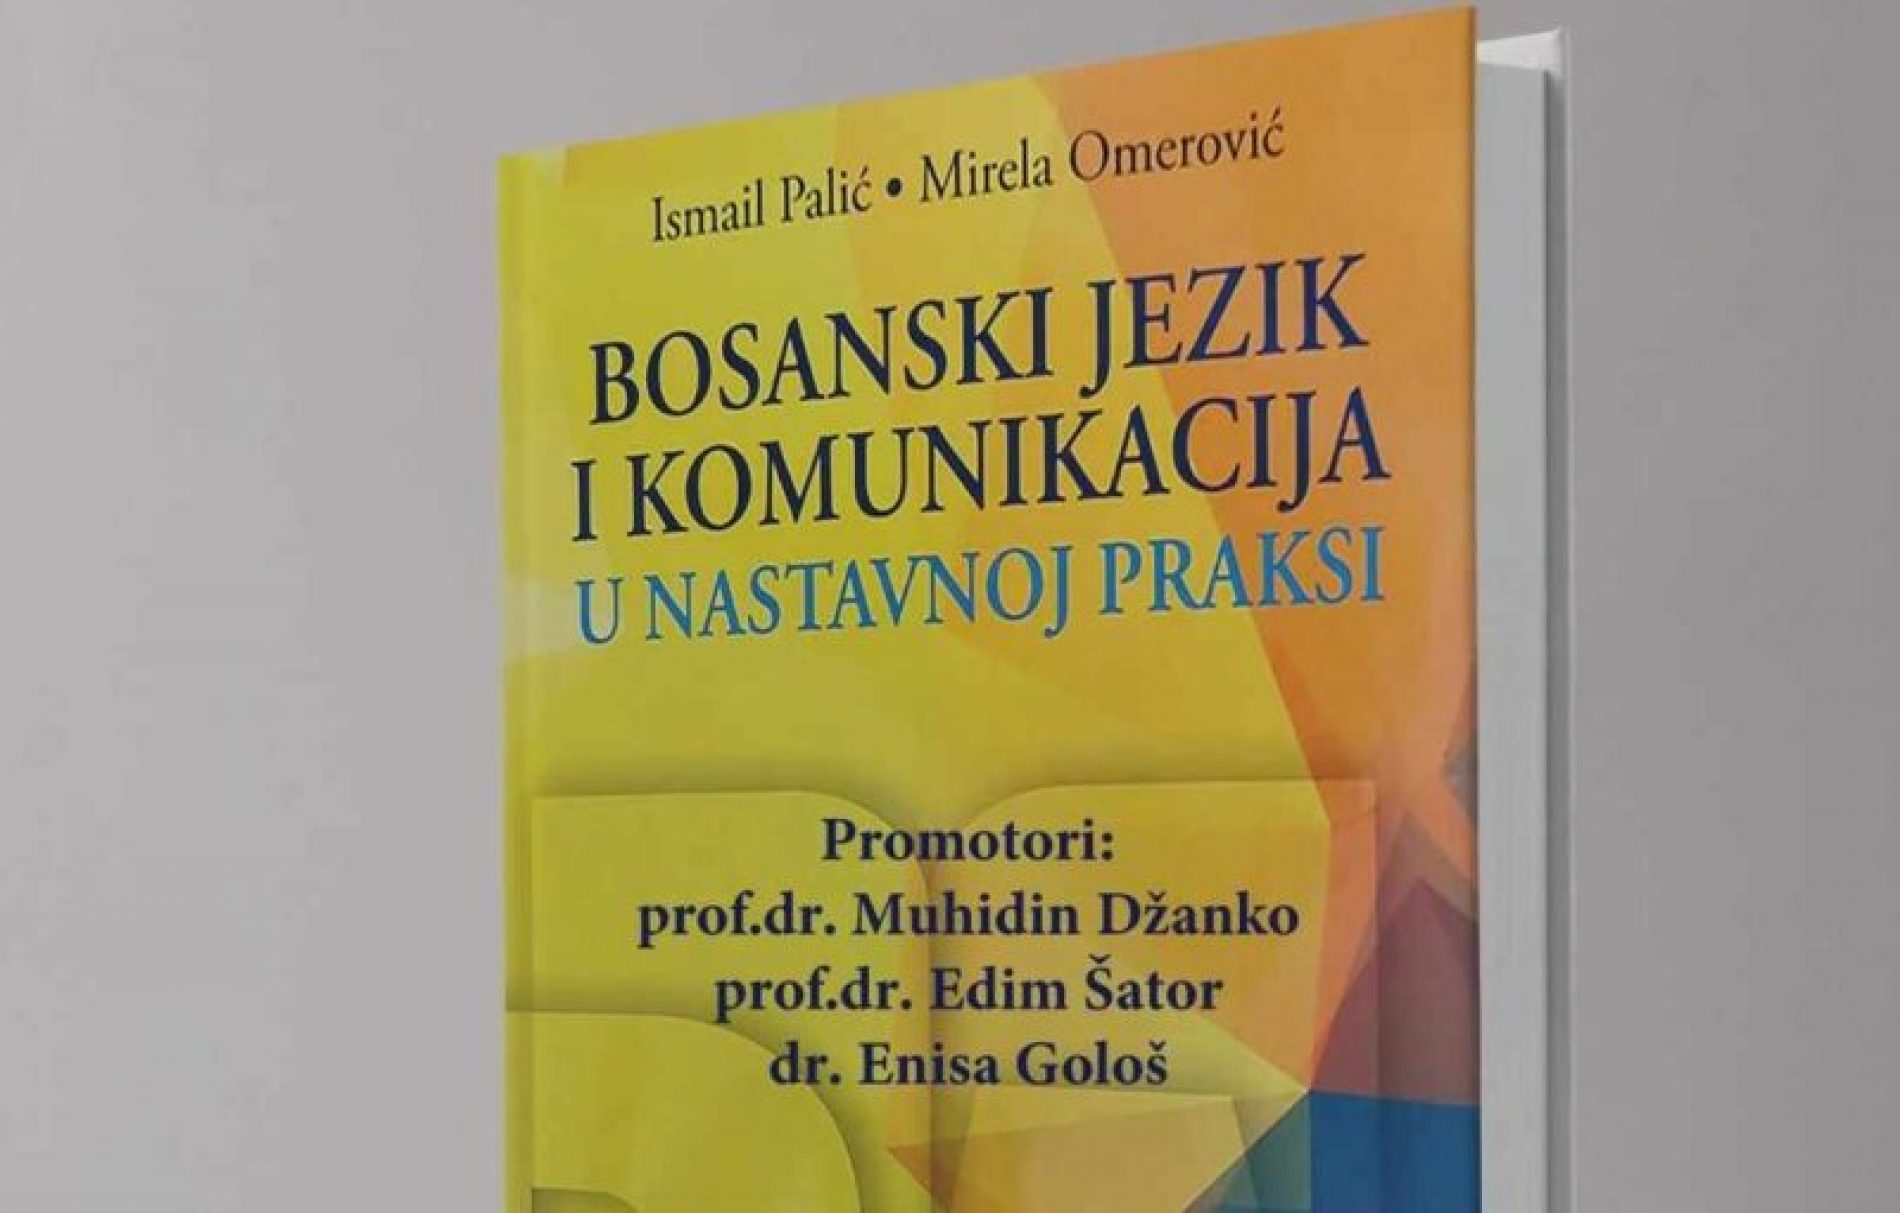 Promocija knjige “Bosanski jezik i komunikacija u nastavnoj praksi” u četvrtak u Mostaru